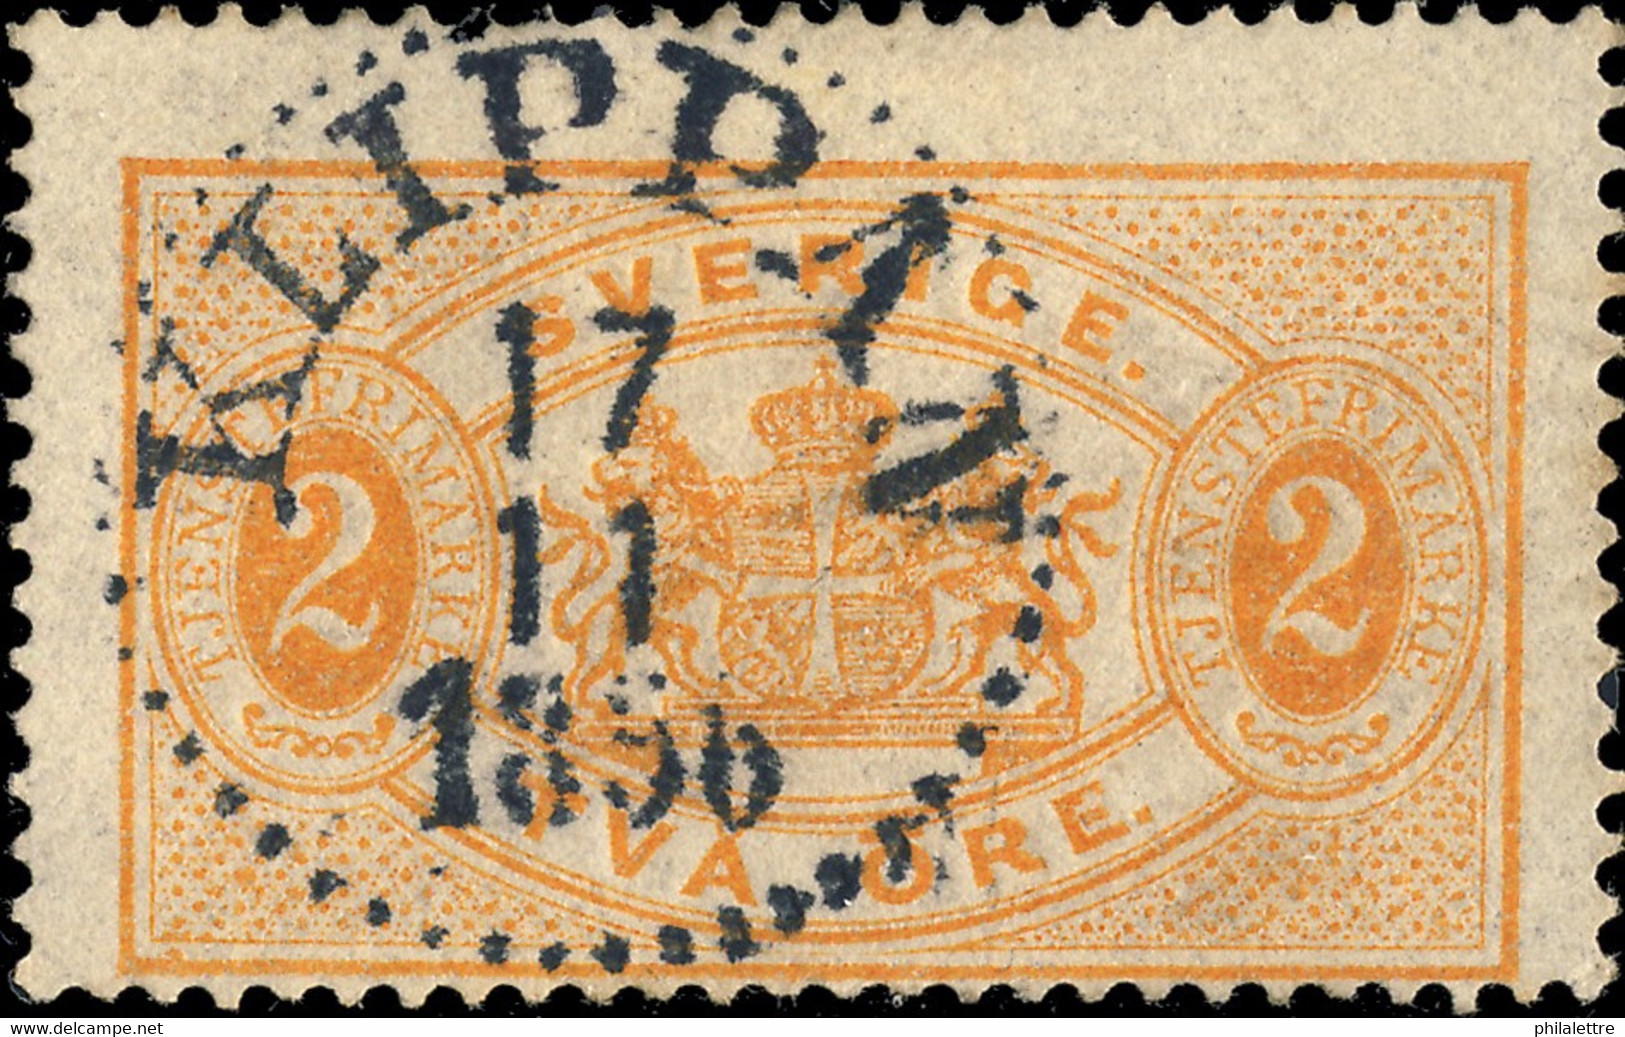 SUÈDE / SWEDEN / SVERIGE - 1896 - " KLIPPAN " (Type 14) On Mi.D14 2 öre Orange OFFICIAL - Officials